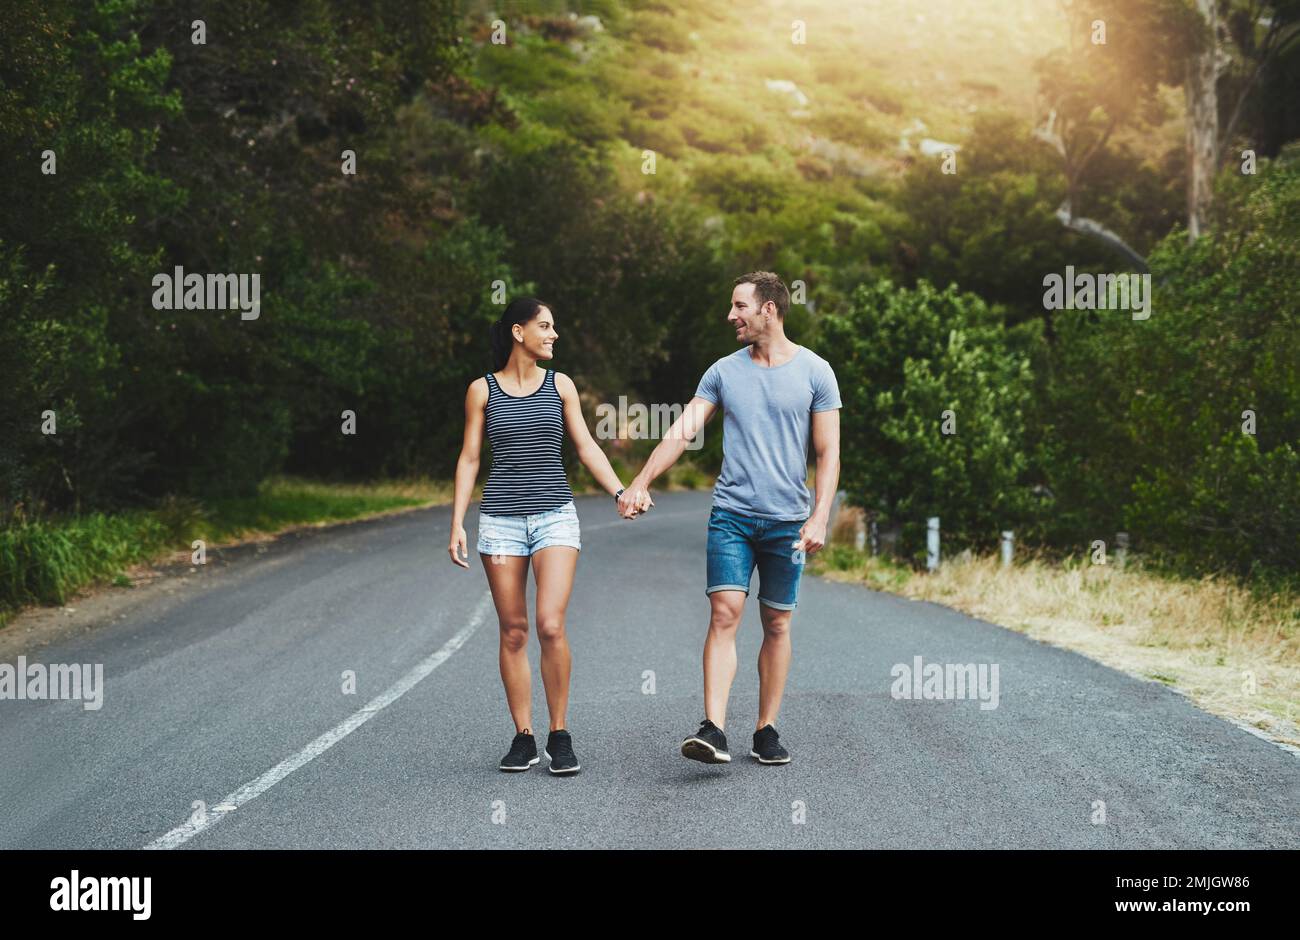 Les soulmates partagent le même sens de la direction. un jeune couple heureux marchant dans une rue à l'extérieur. Banque D'Images